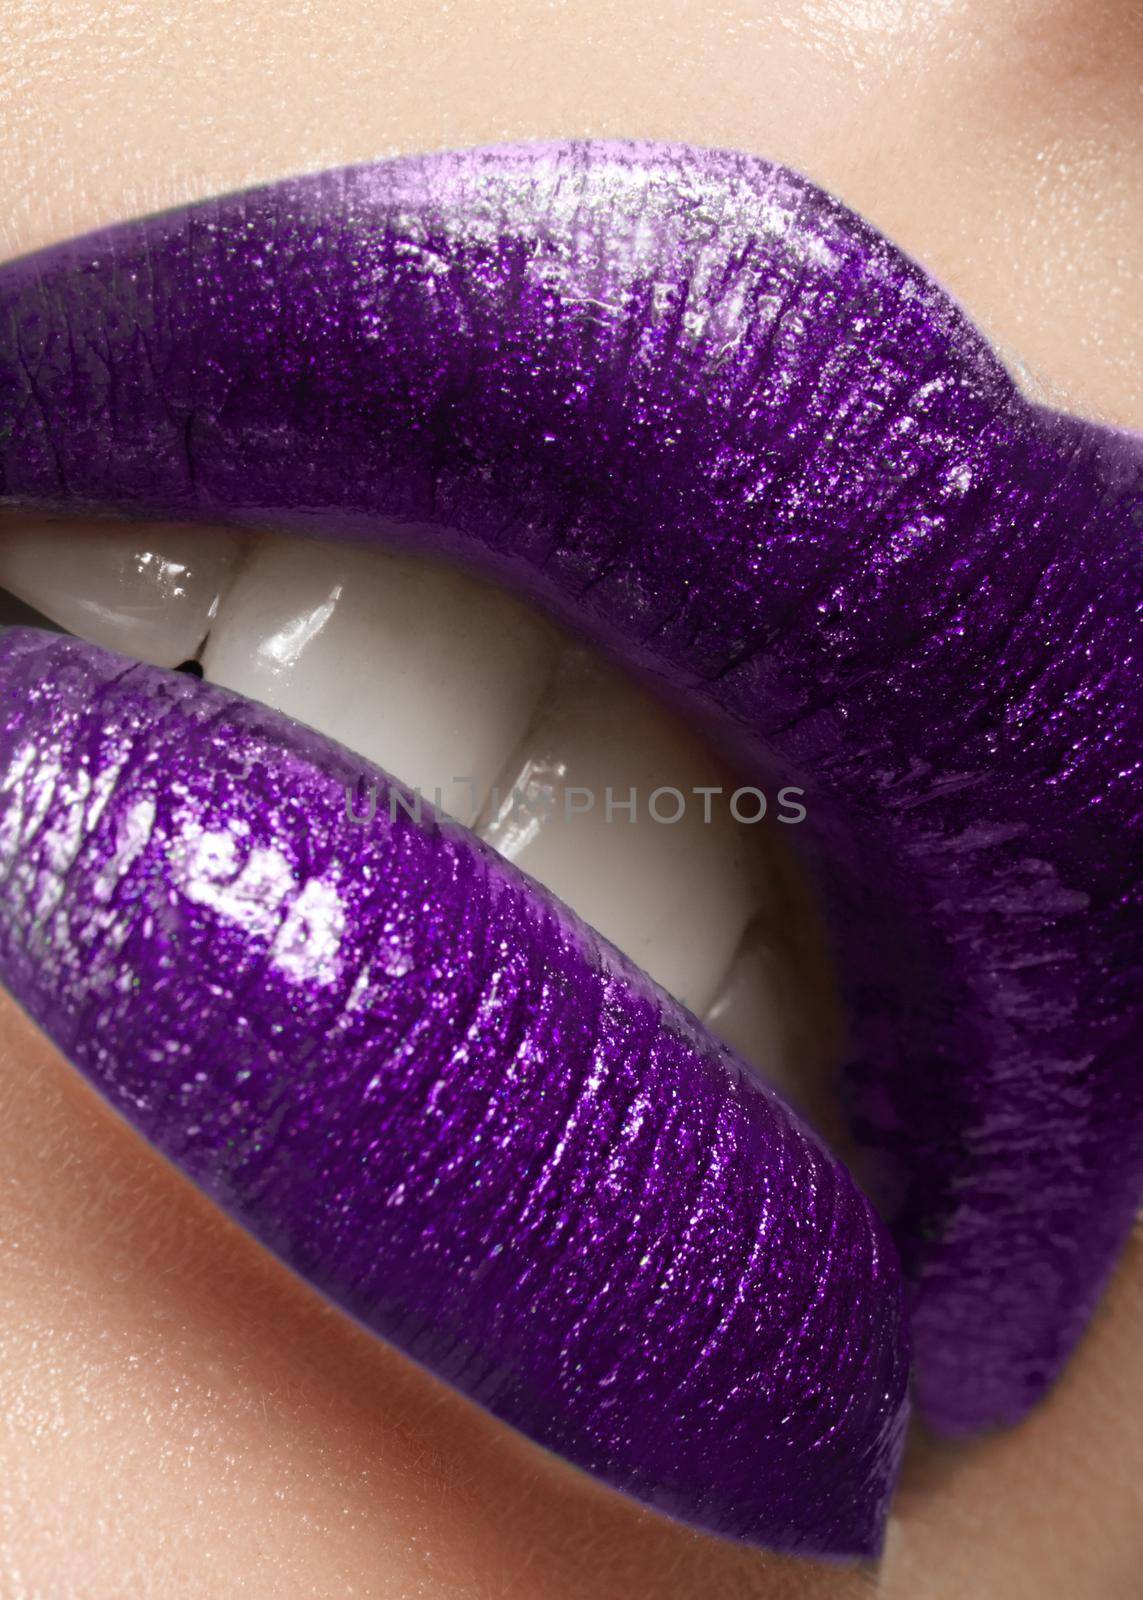 Glamour plum Gloss Lip Make-up. Fashion Makeup Beauty Shot. Close-up Sexy full Lips with celebrate Purple Lipgloss by MarinaFrost